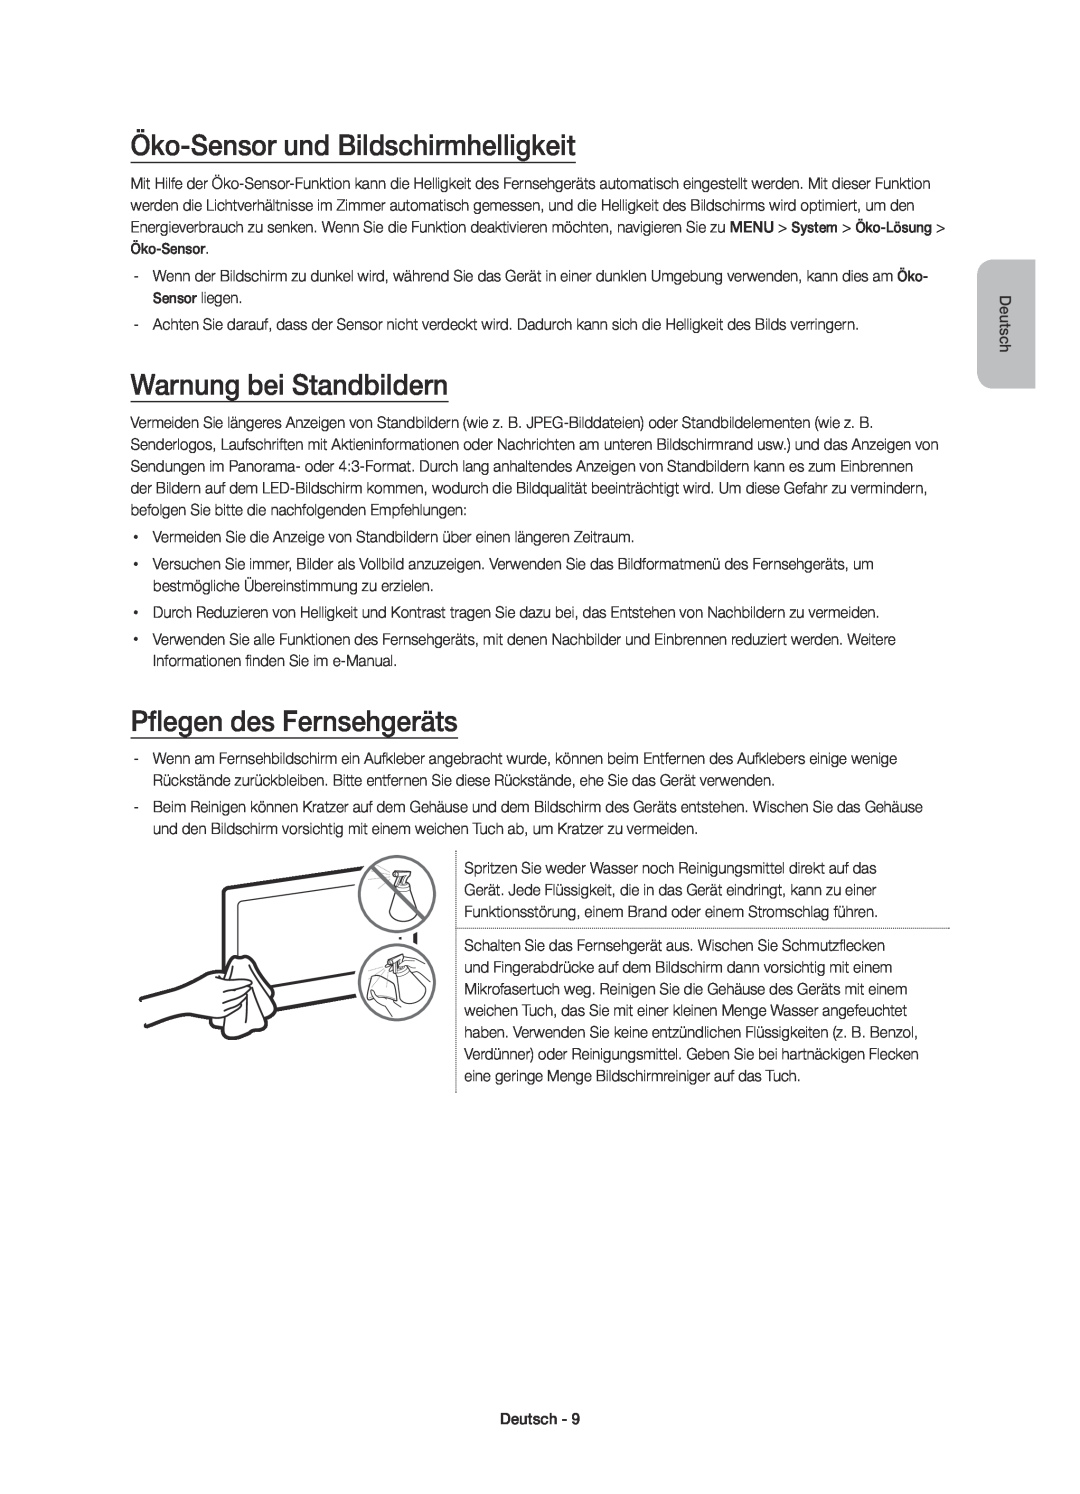 Samsung UE32J5570SUXTK manual Öko-Sensor und Bildschirmhelligkeit, Warnung bei Standbildern, Pflegen des Fernsehgeräts 